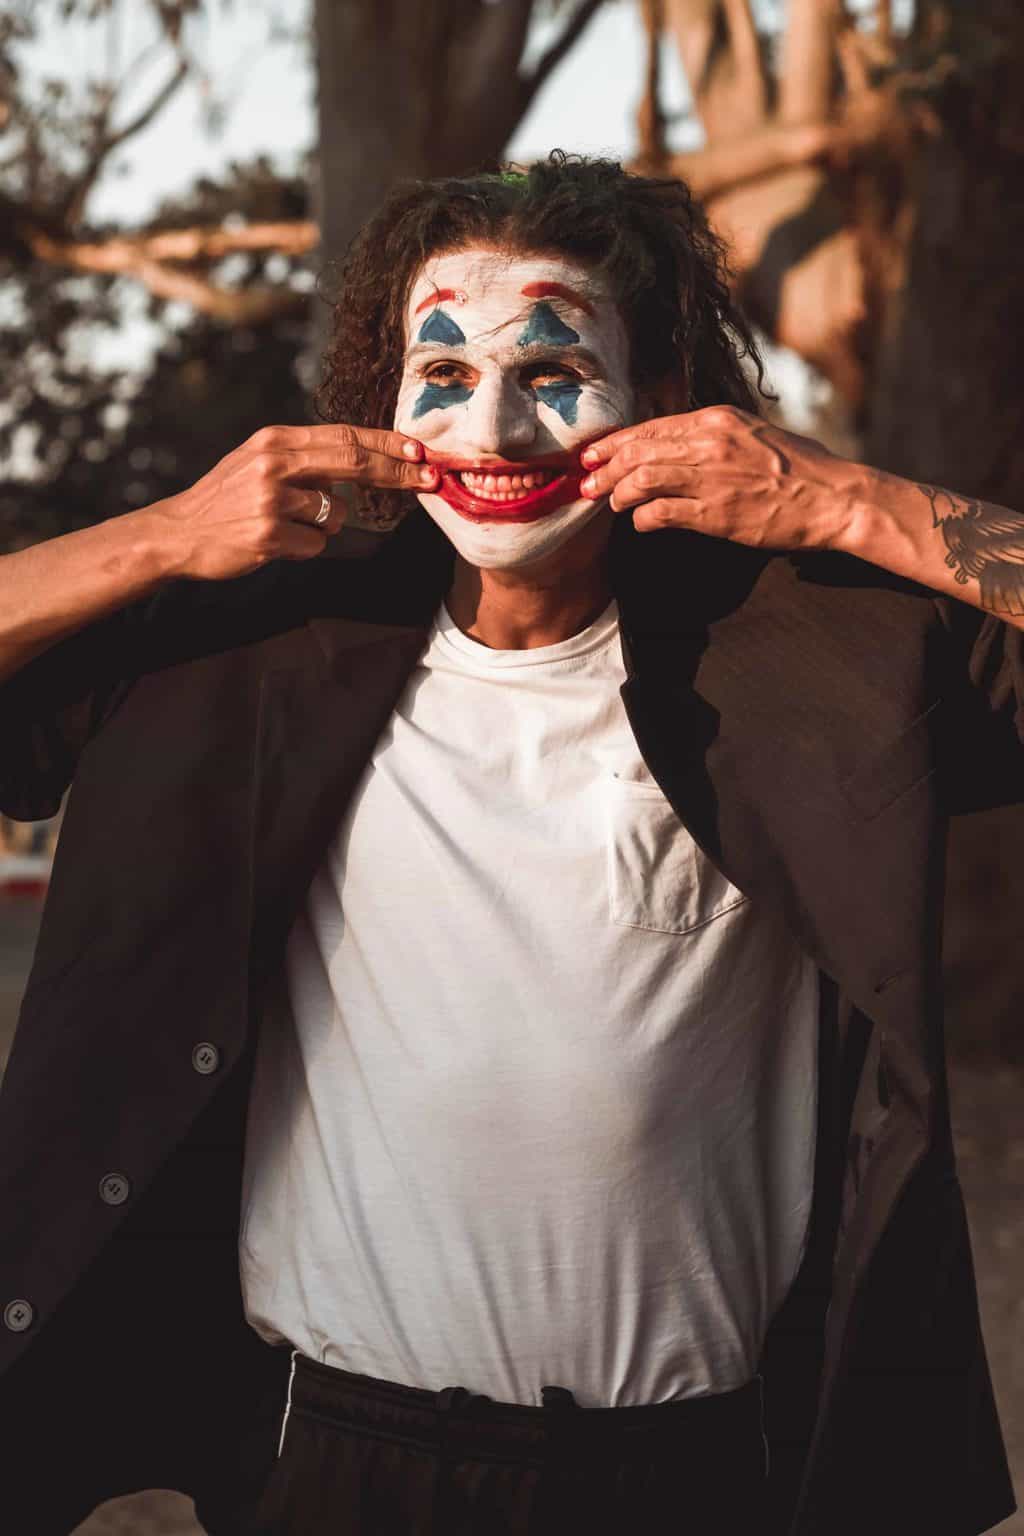 Joker-inspired costume 